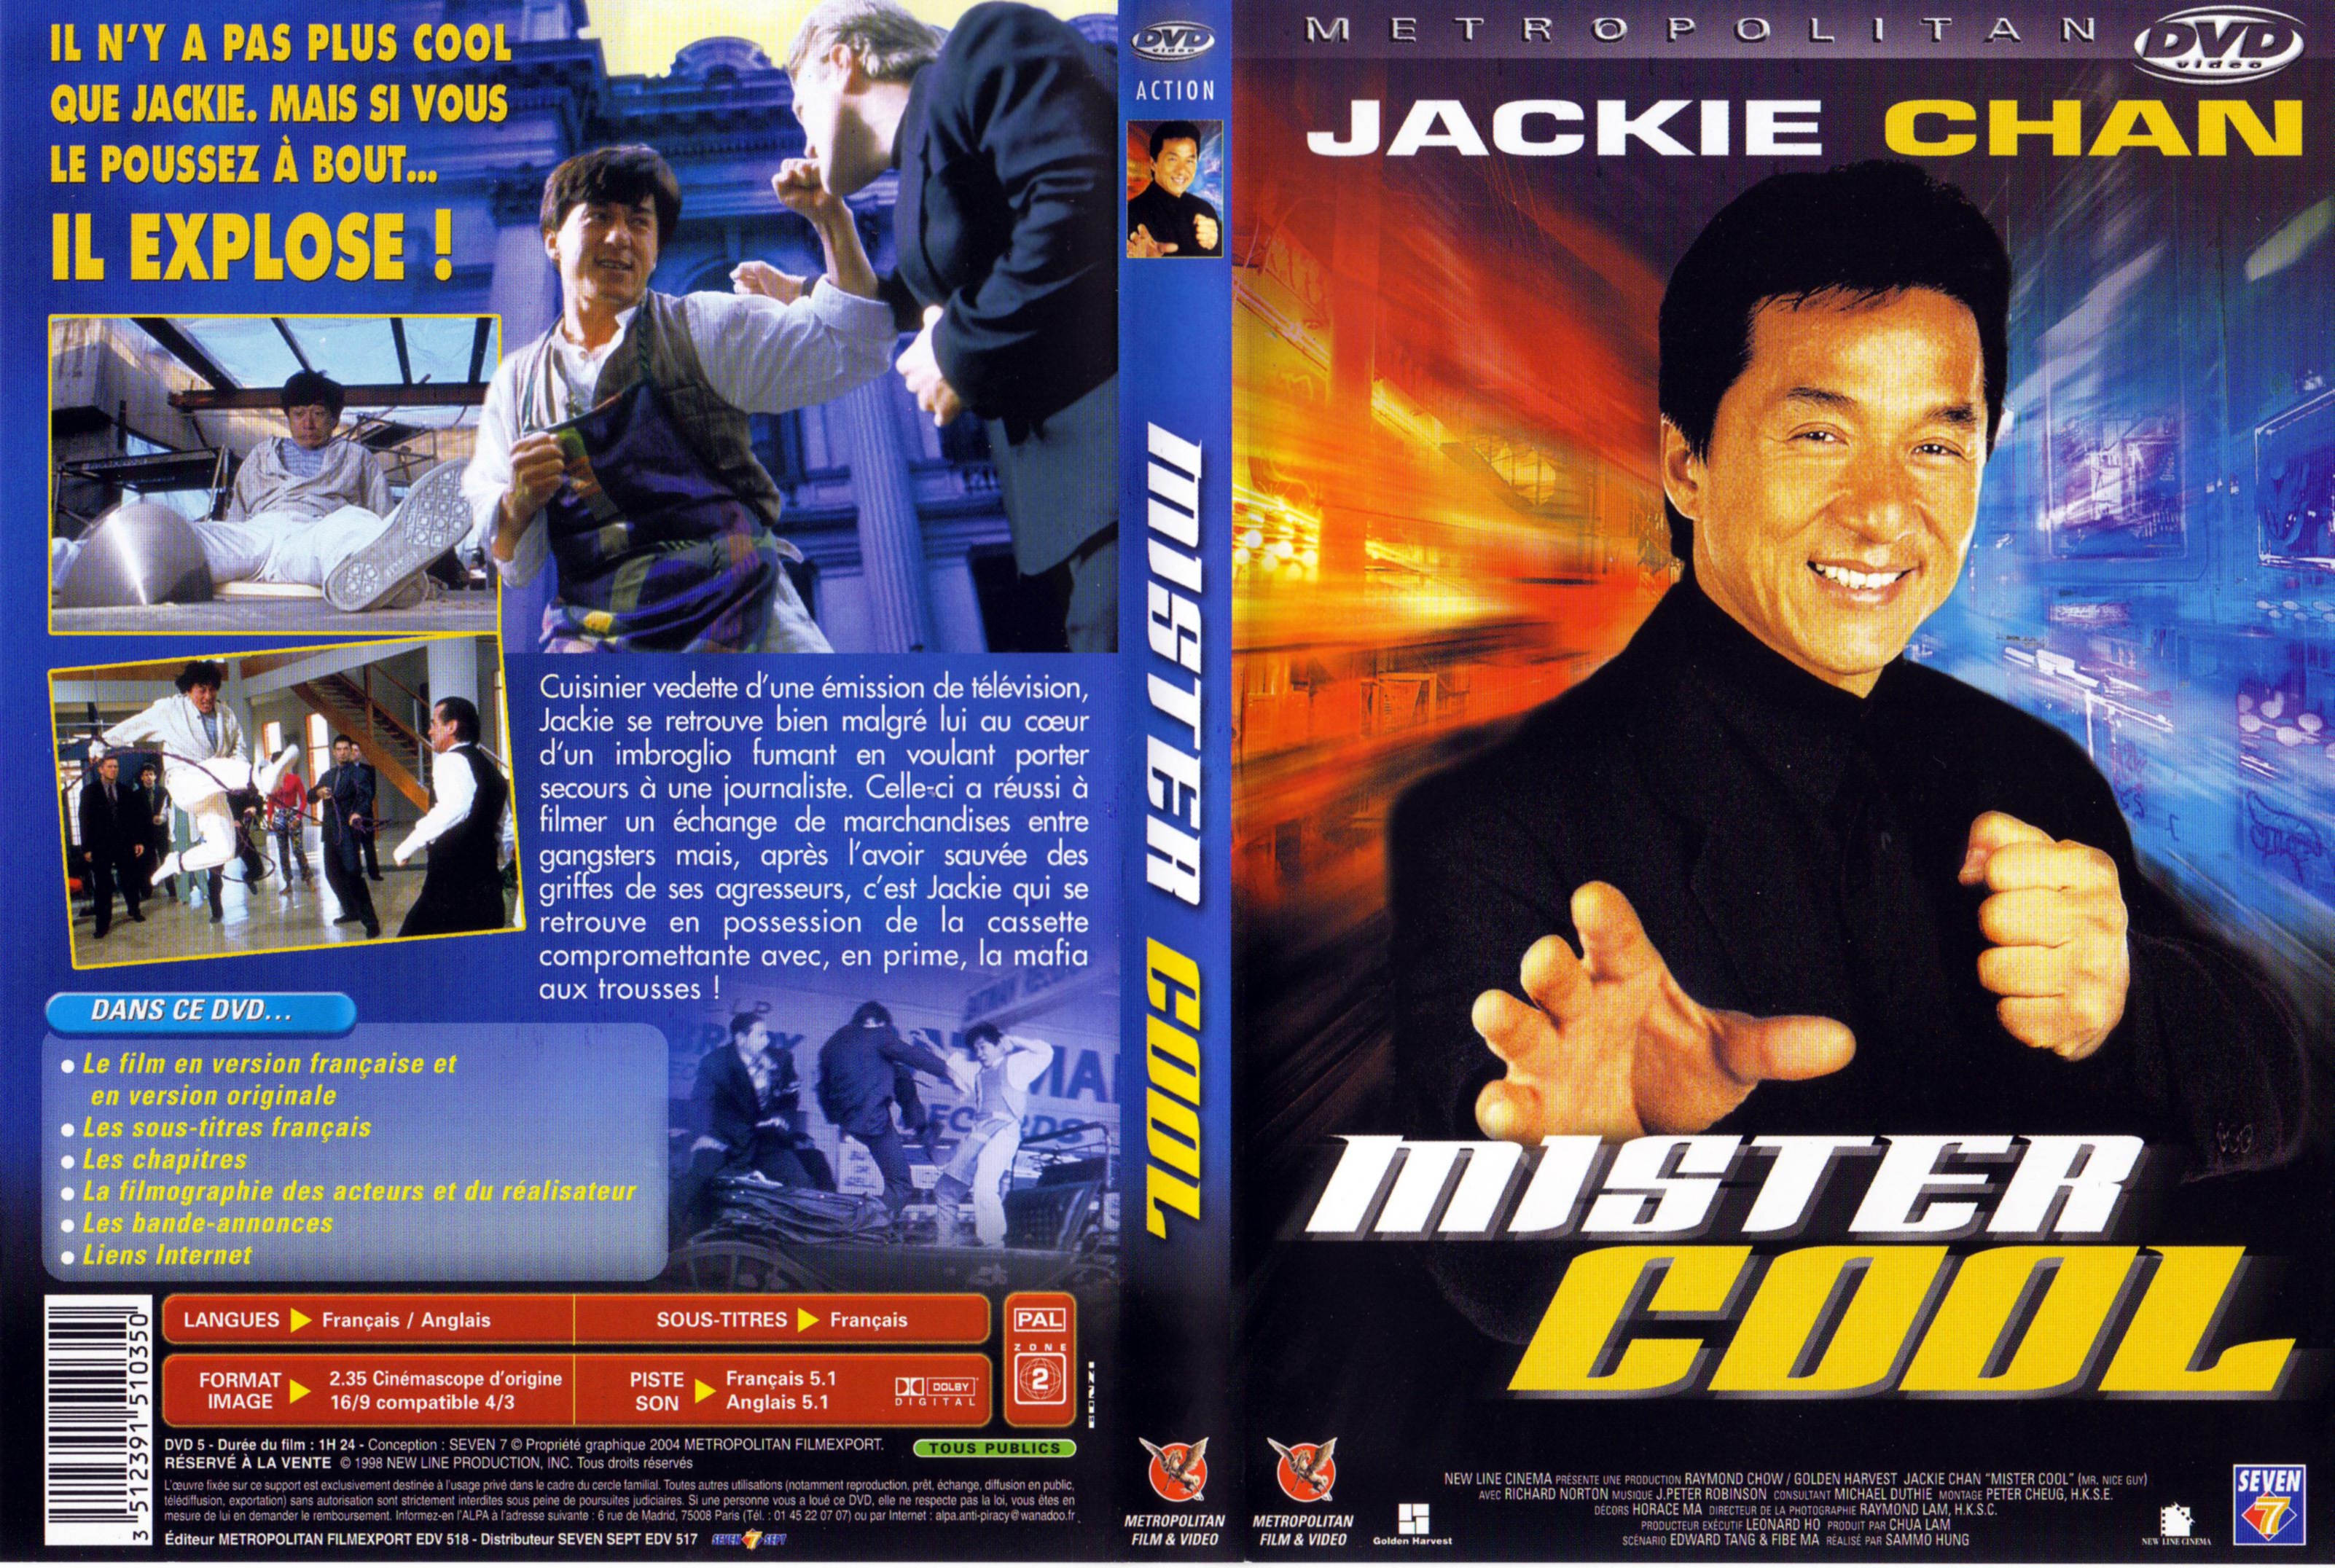 Jaquette DVD Mister cool v2